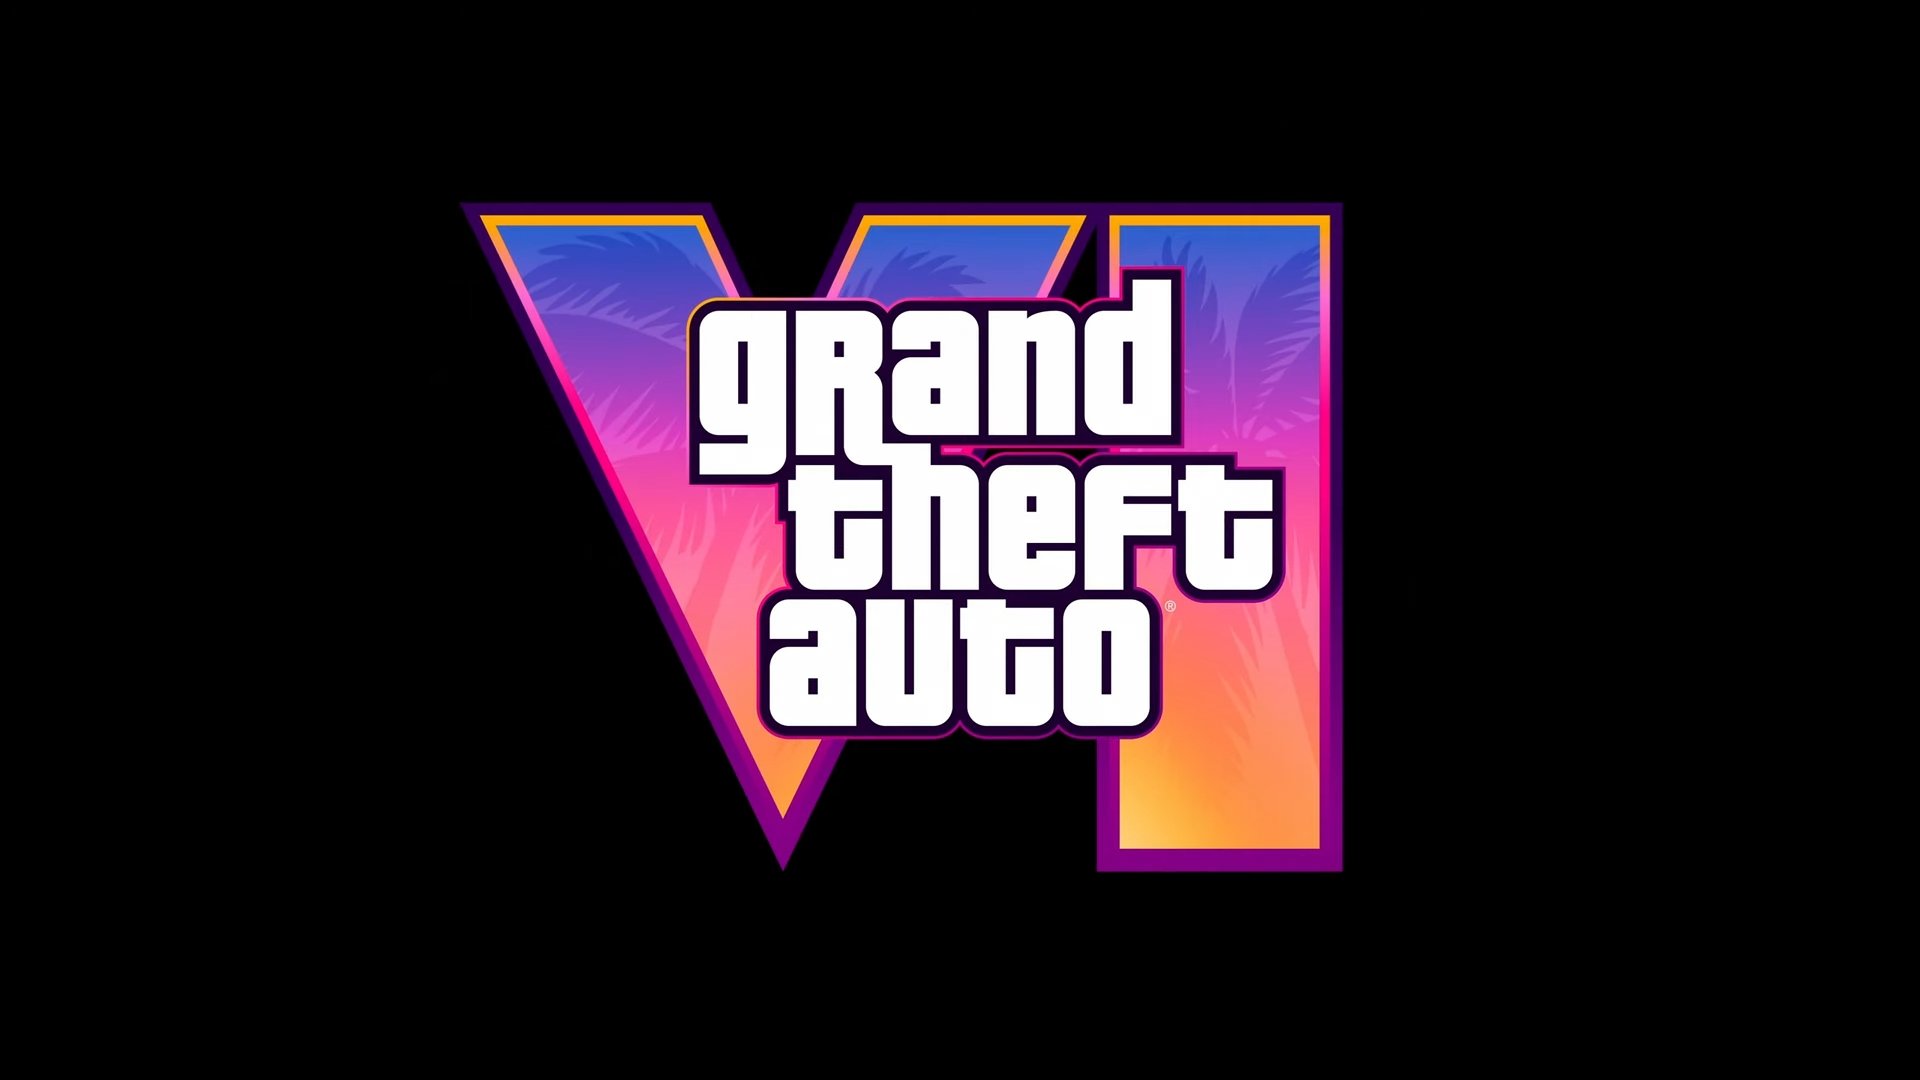 É oficial: trailer de Grand Theft Auto VI lançado!